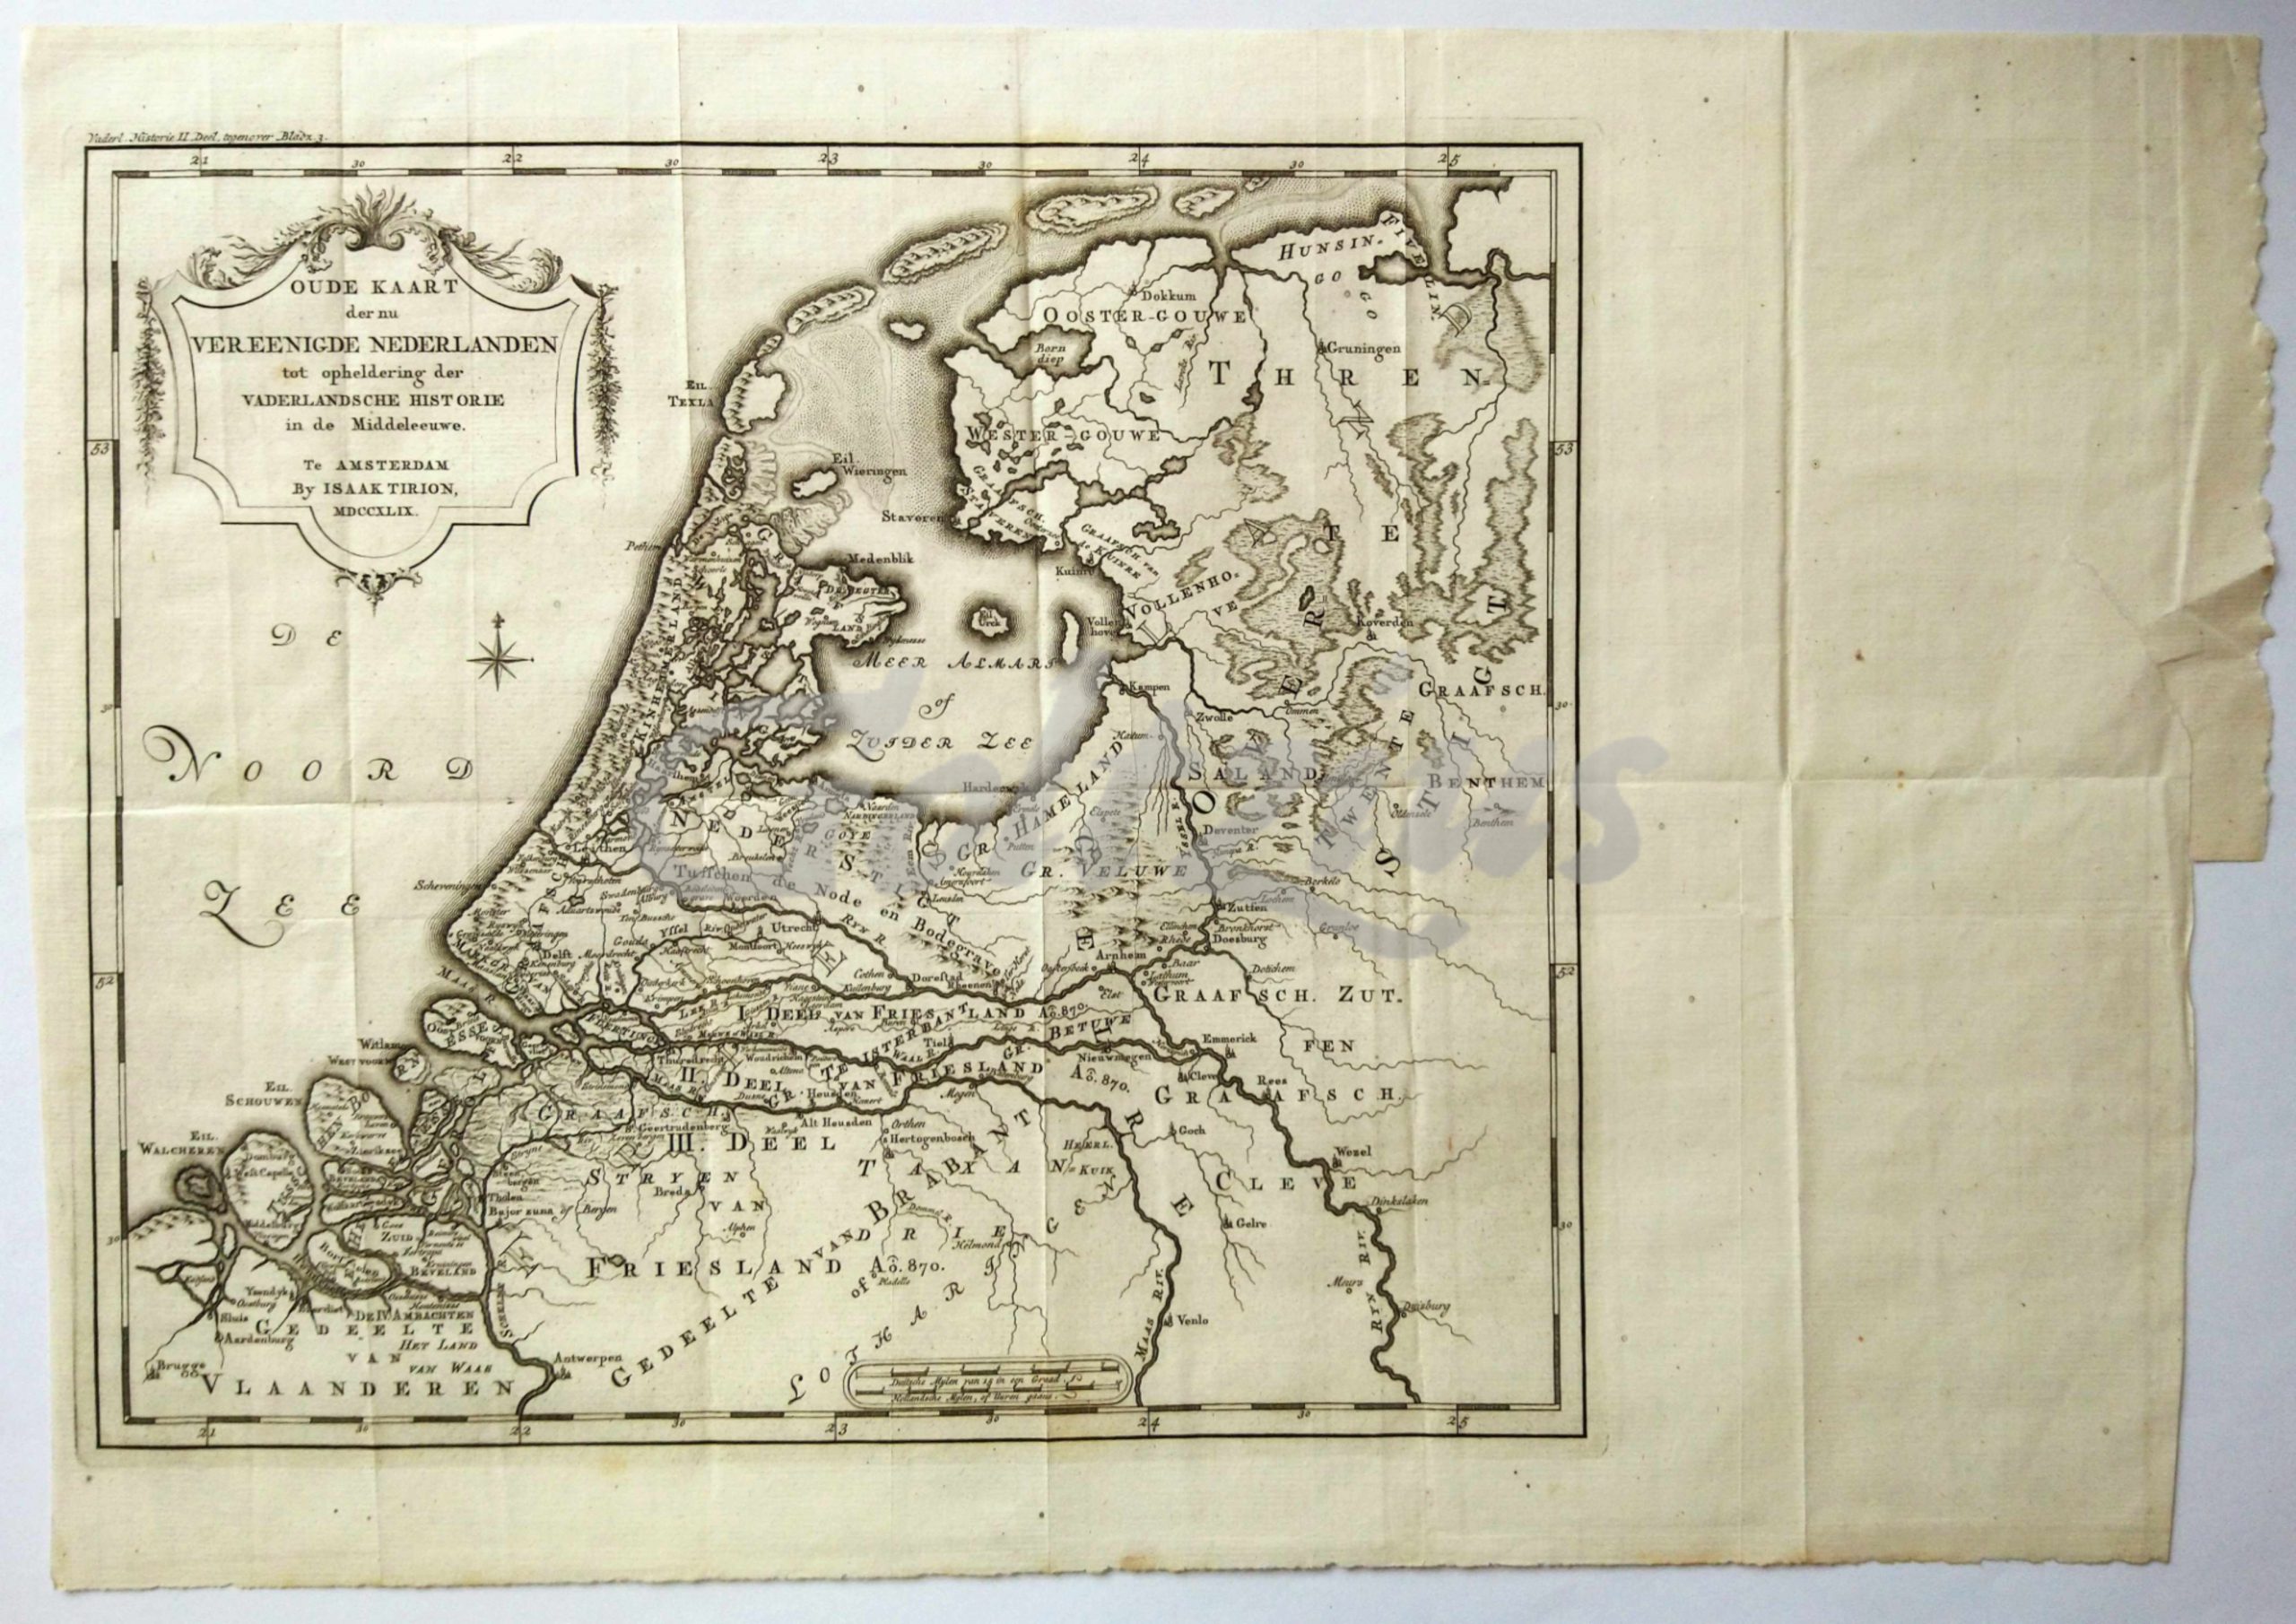 TIRION, IS., Oude kaart der nu Vereenigde Nederlanden tot opheldering der Vaderlandsche historie in de Middeleeuwe